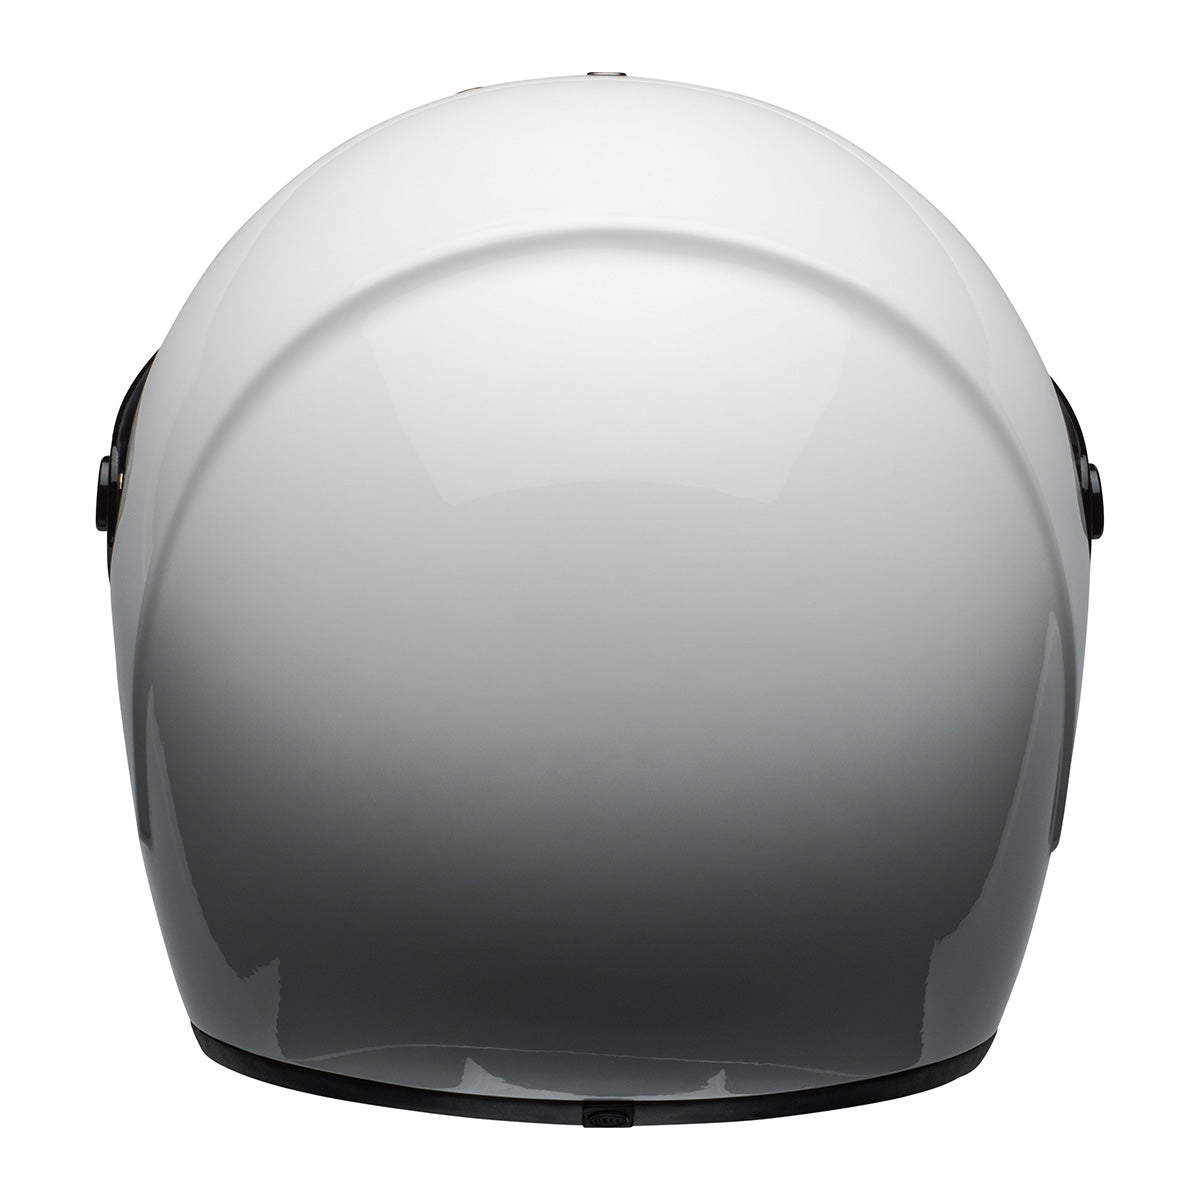 Bell Eliminator 'Born from Auto, Built for the Street' Full Face Gloss White Helmet